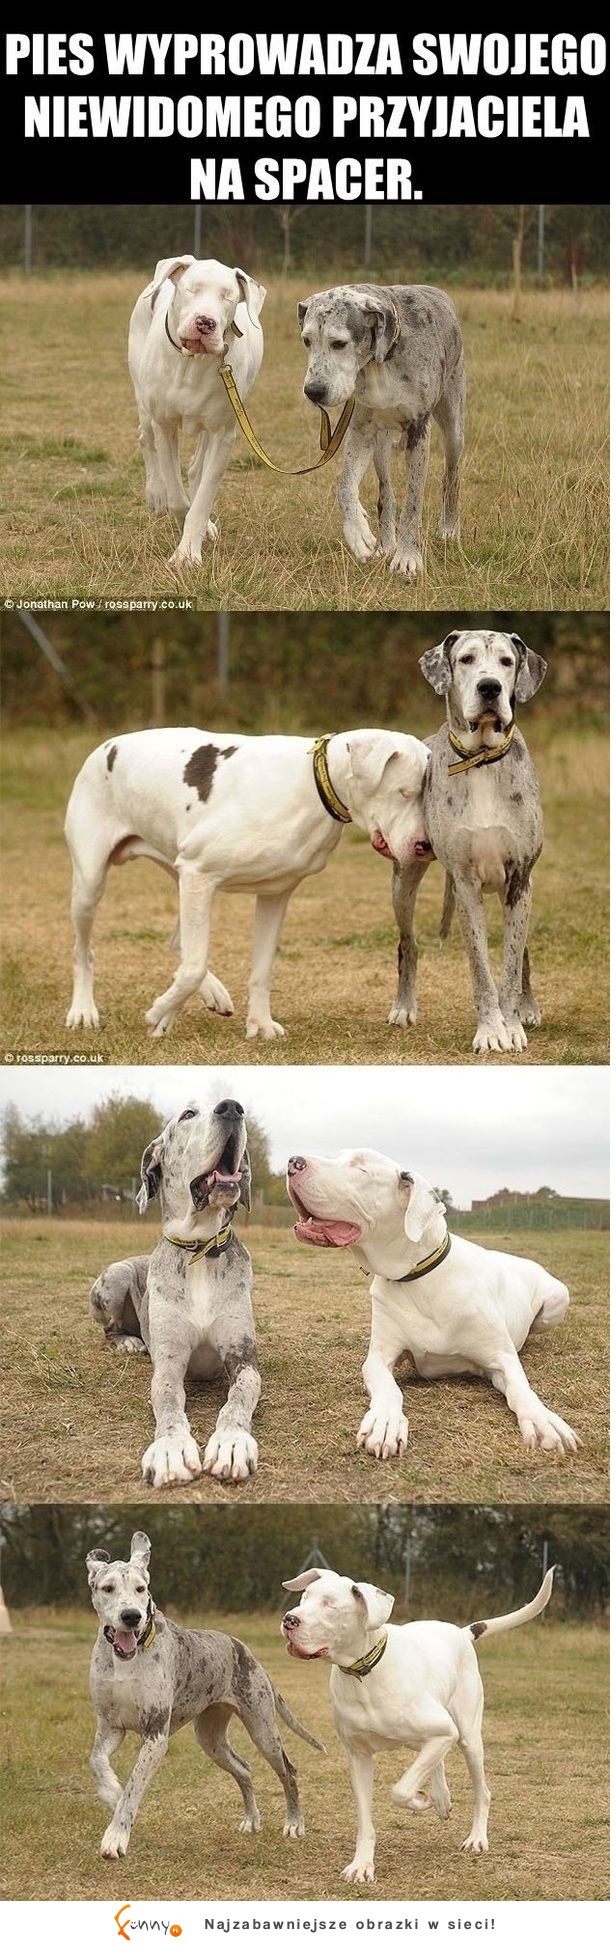 Pies wyprowadza swojego niewidomego przyjaciela...